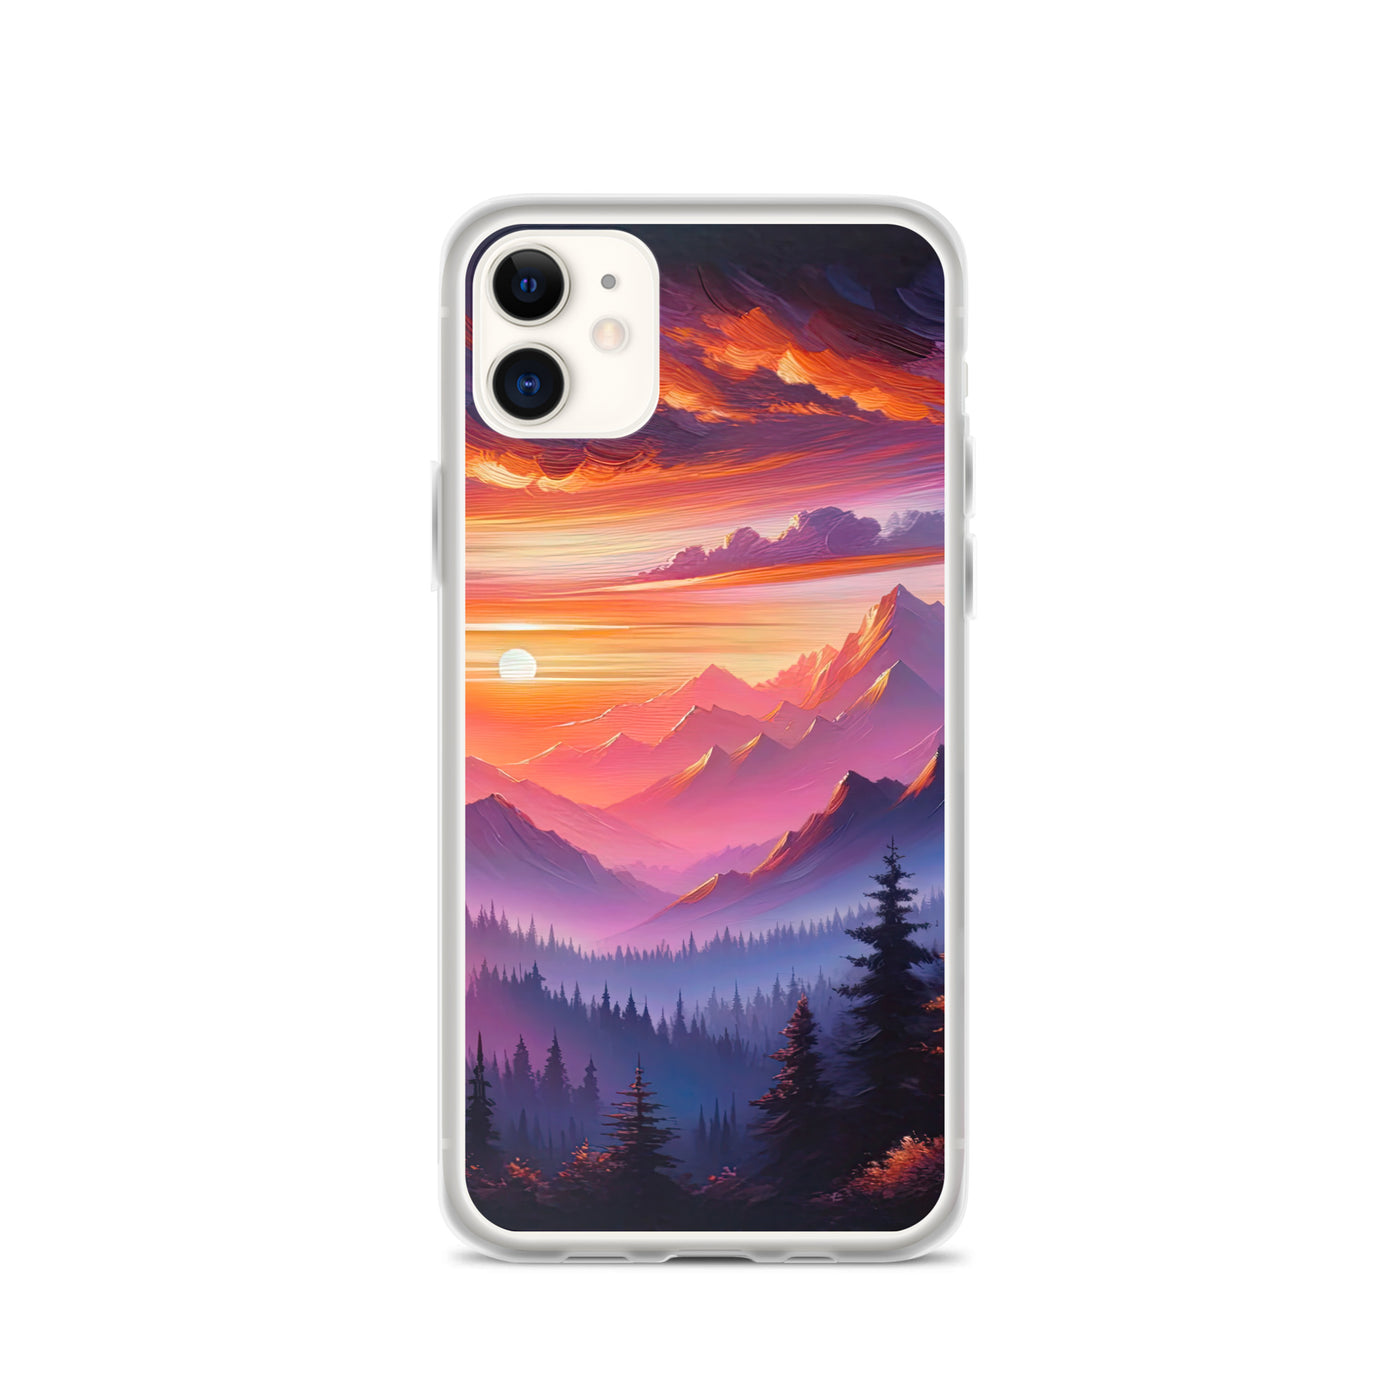 Ölgemälde der Alpenlandschaft im ätherischen Sonnenuntergang, himmlische Farbtöne - iPhone Schutzhülle (durchsichtig) berge xxx yyy zzz iPhone 11